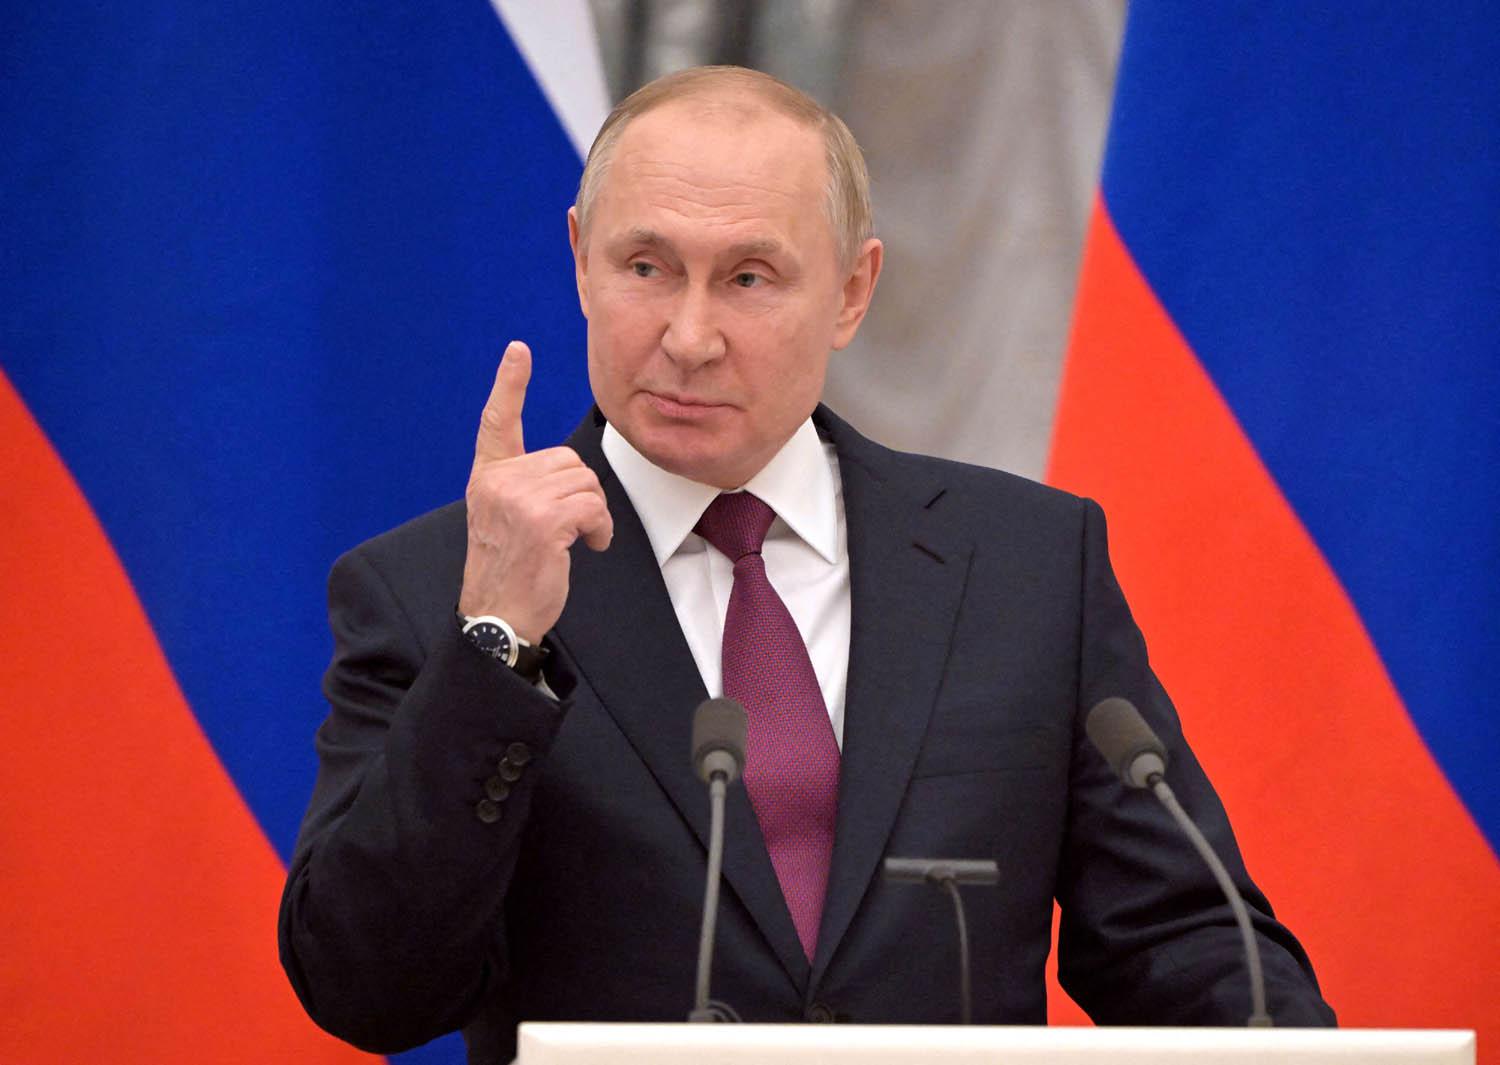 صورة متى تولى بوتين رئاسة روسيا